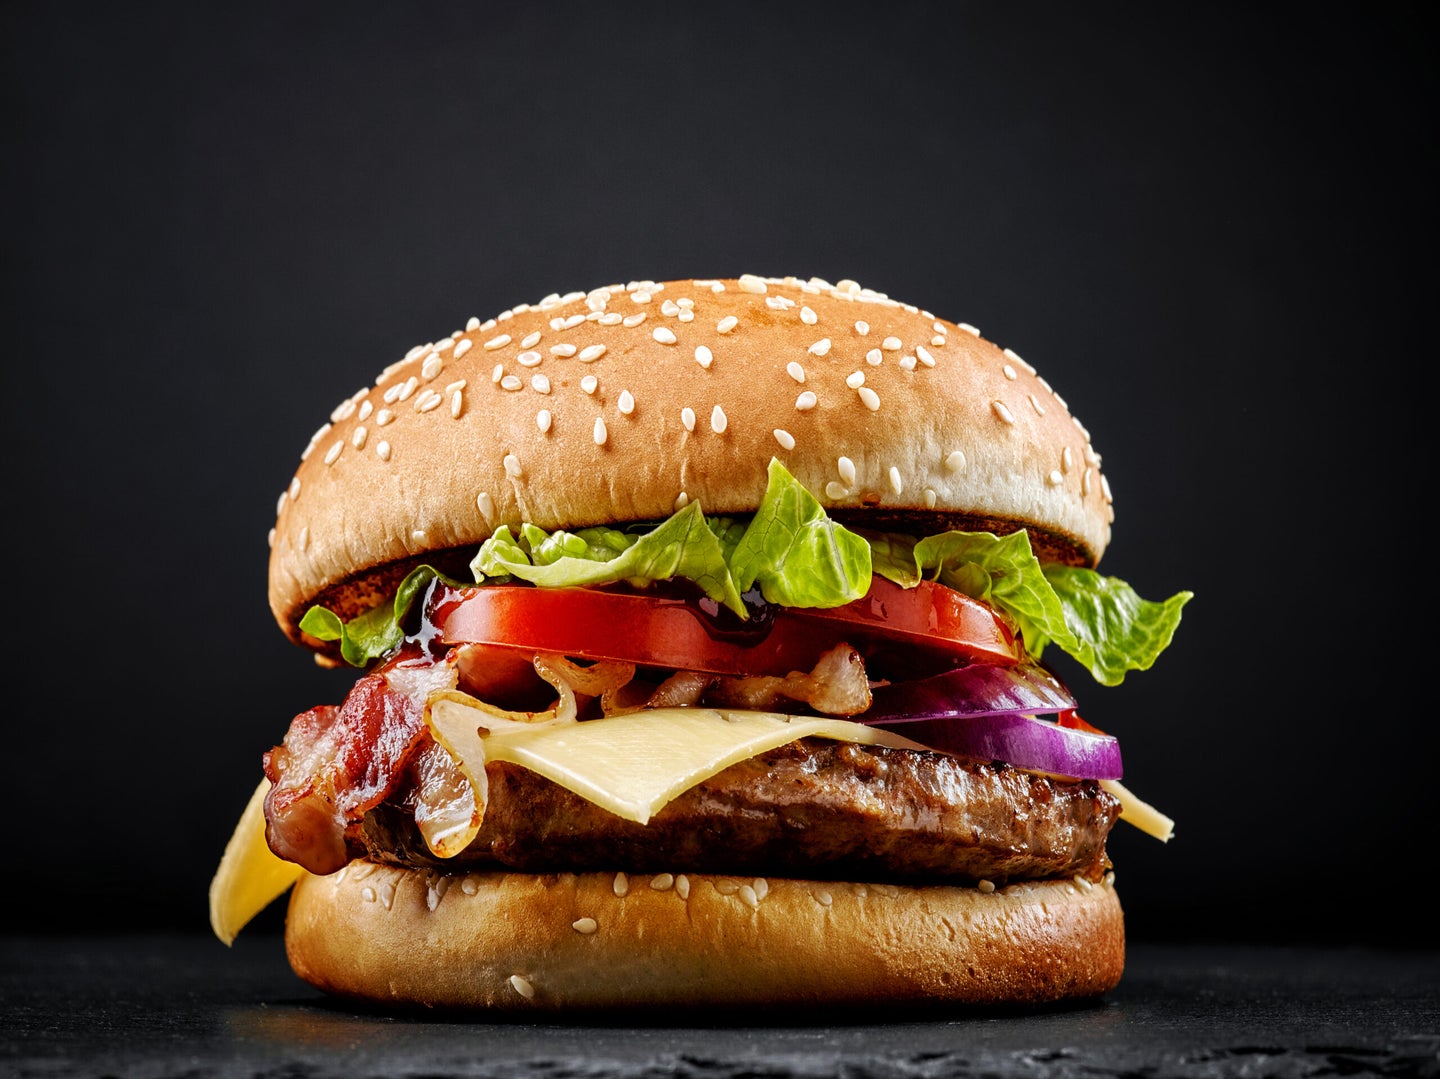 Burger on black background.